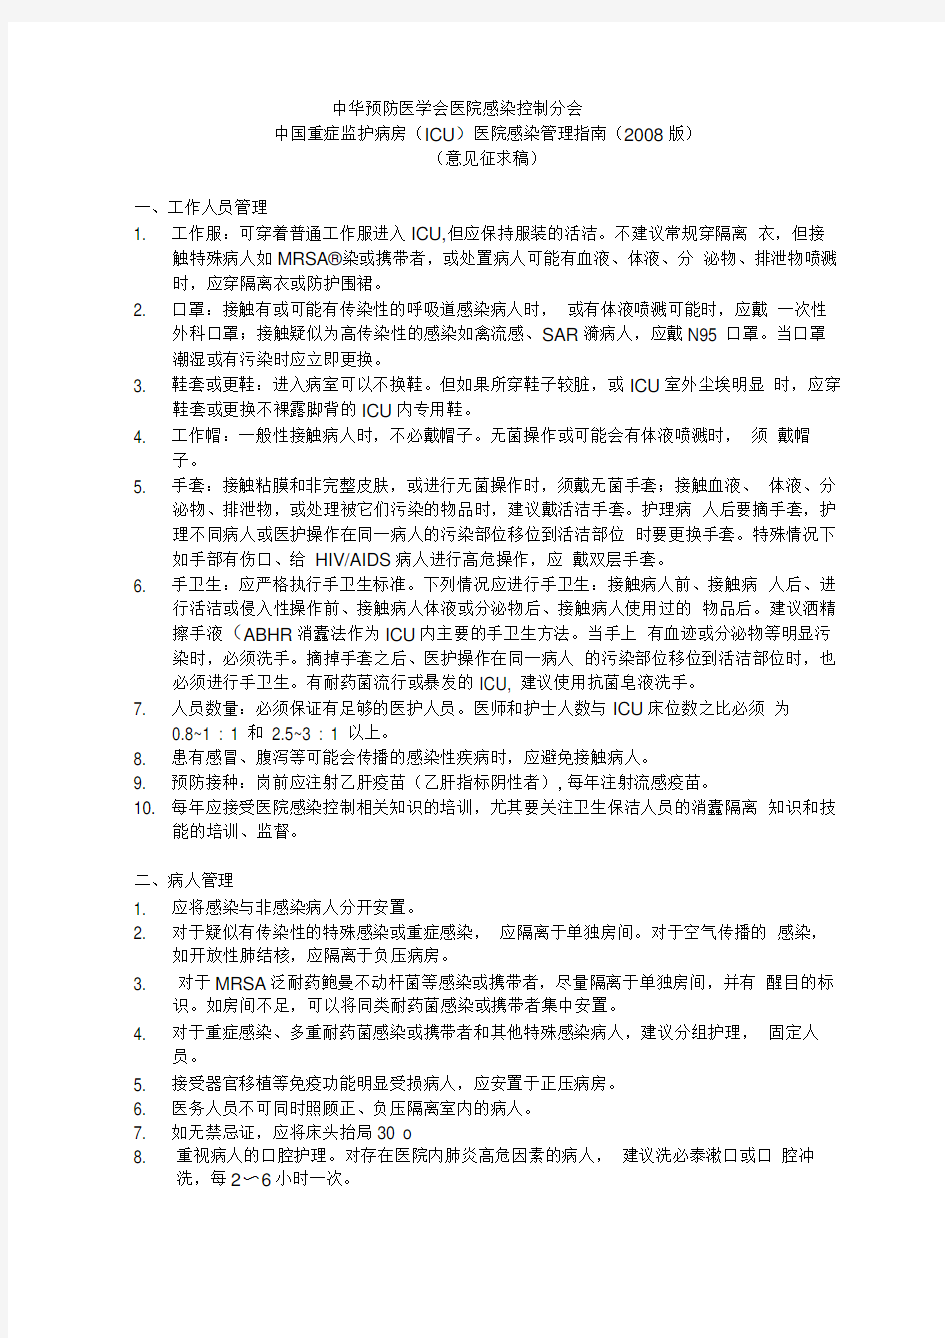 中国重症监护病房(ICU)医院感染管理指南